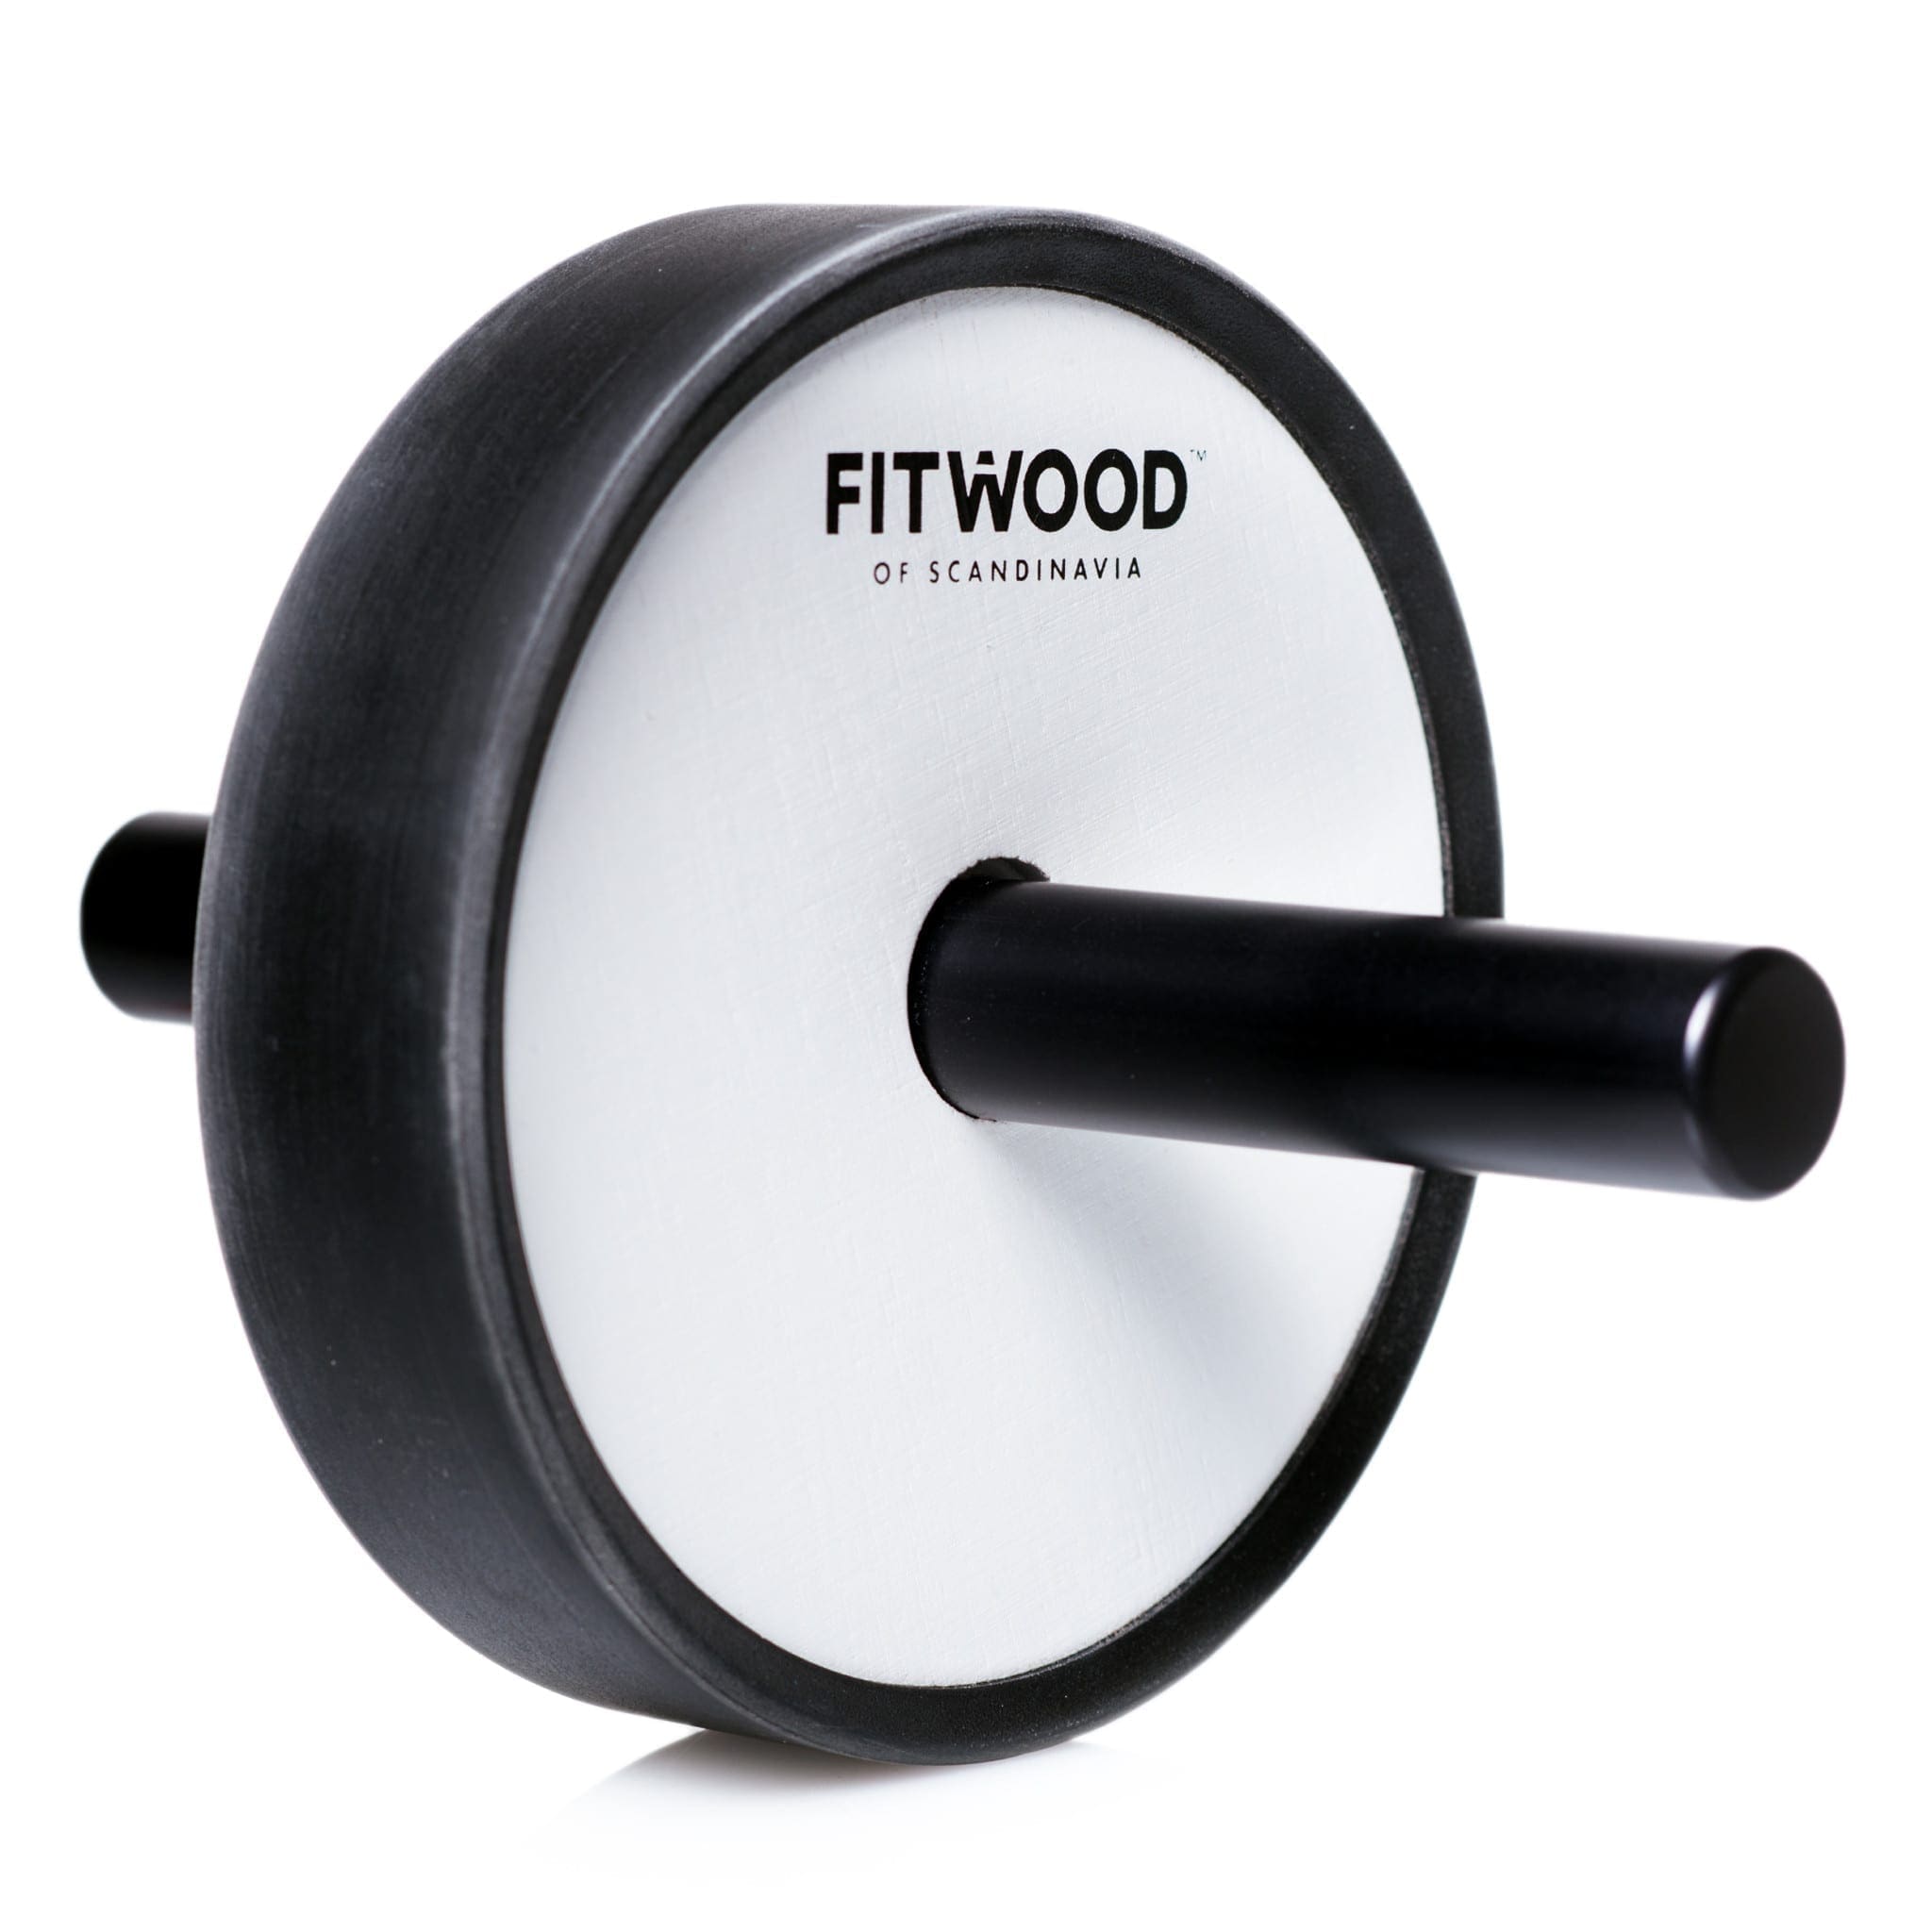 FitWood Kjerag exercise wheel ab roller birch wood